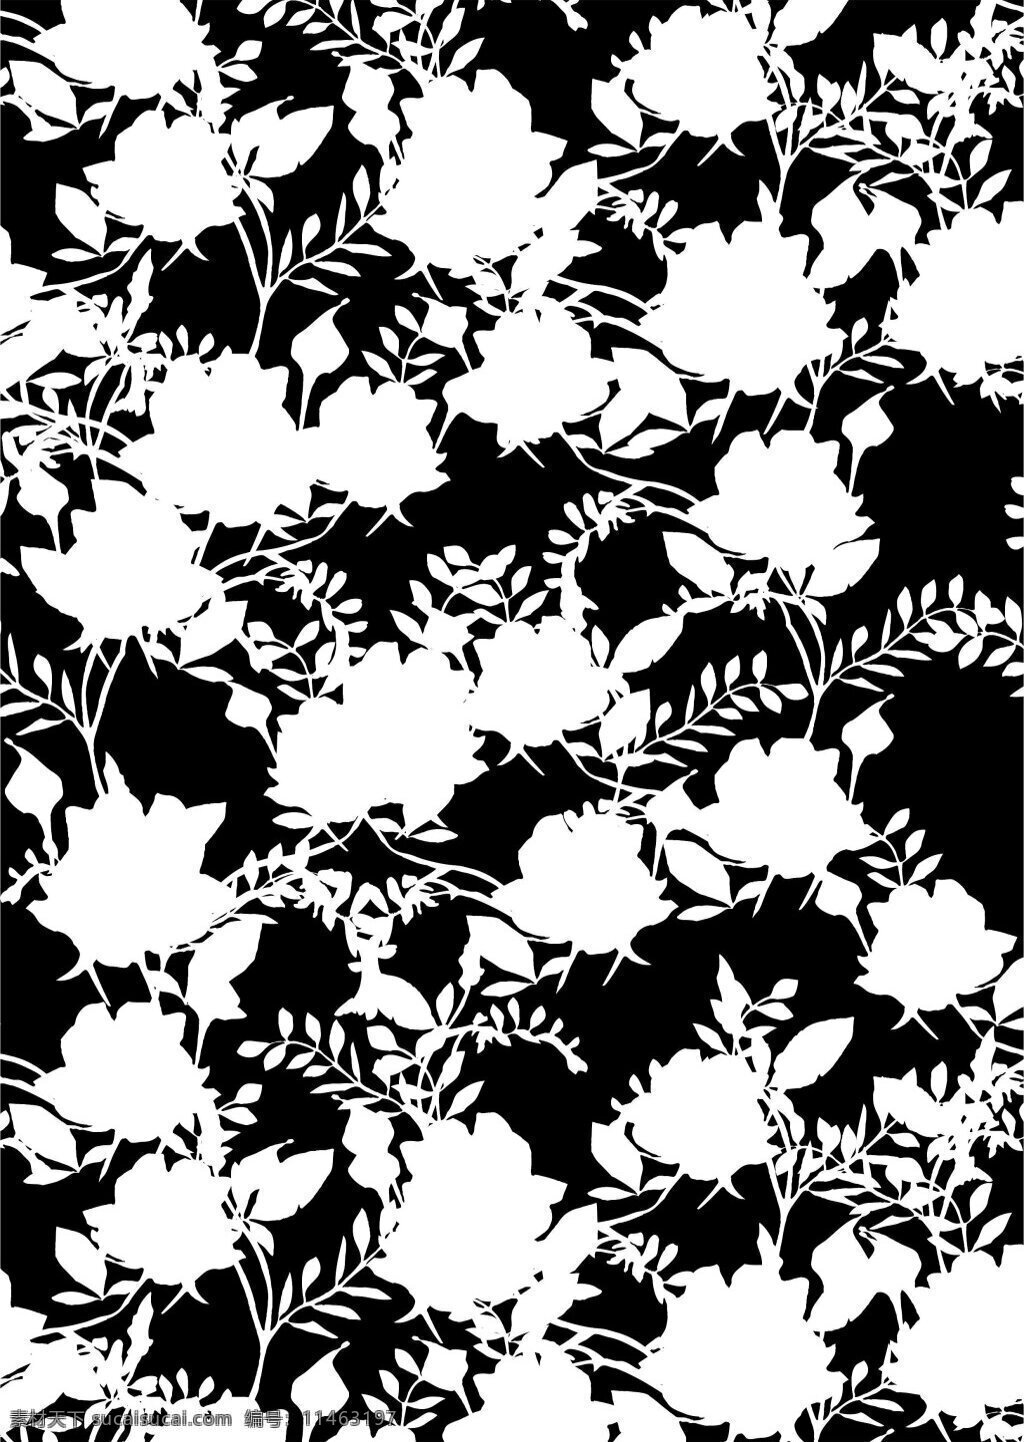 典雅 黑白 花朵 广告 背景 白色花朵 广告背景 黑色底纹 树叶 植物花卉